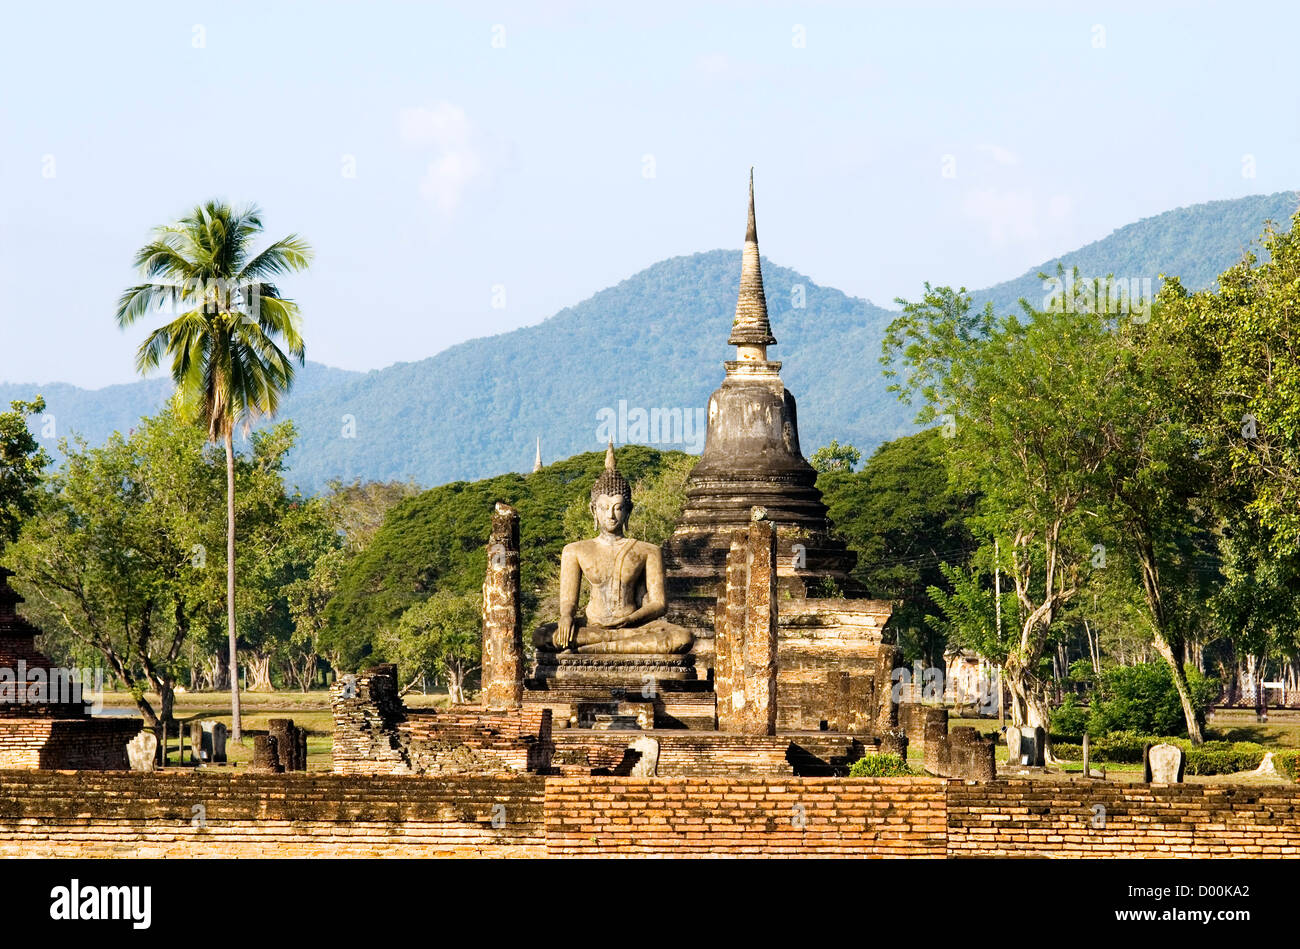 Wat Mahathat, Sukhothai historischen Park, Thailand | Wat Mahathat, Sukhothai Geschichtsparks Sukhothai, Thailand Stockfoto